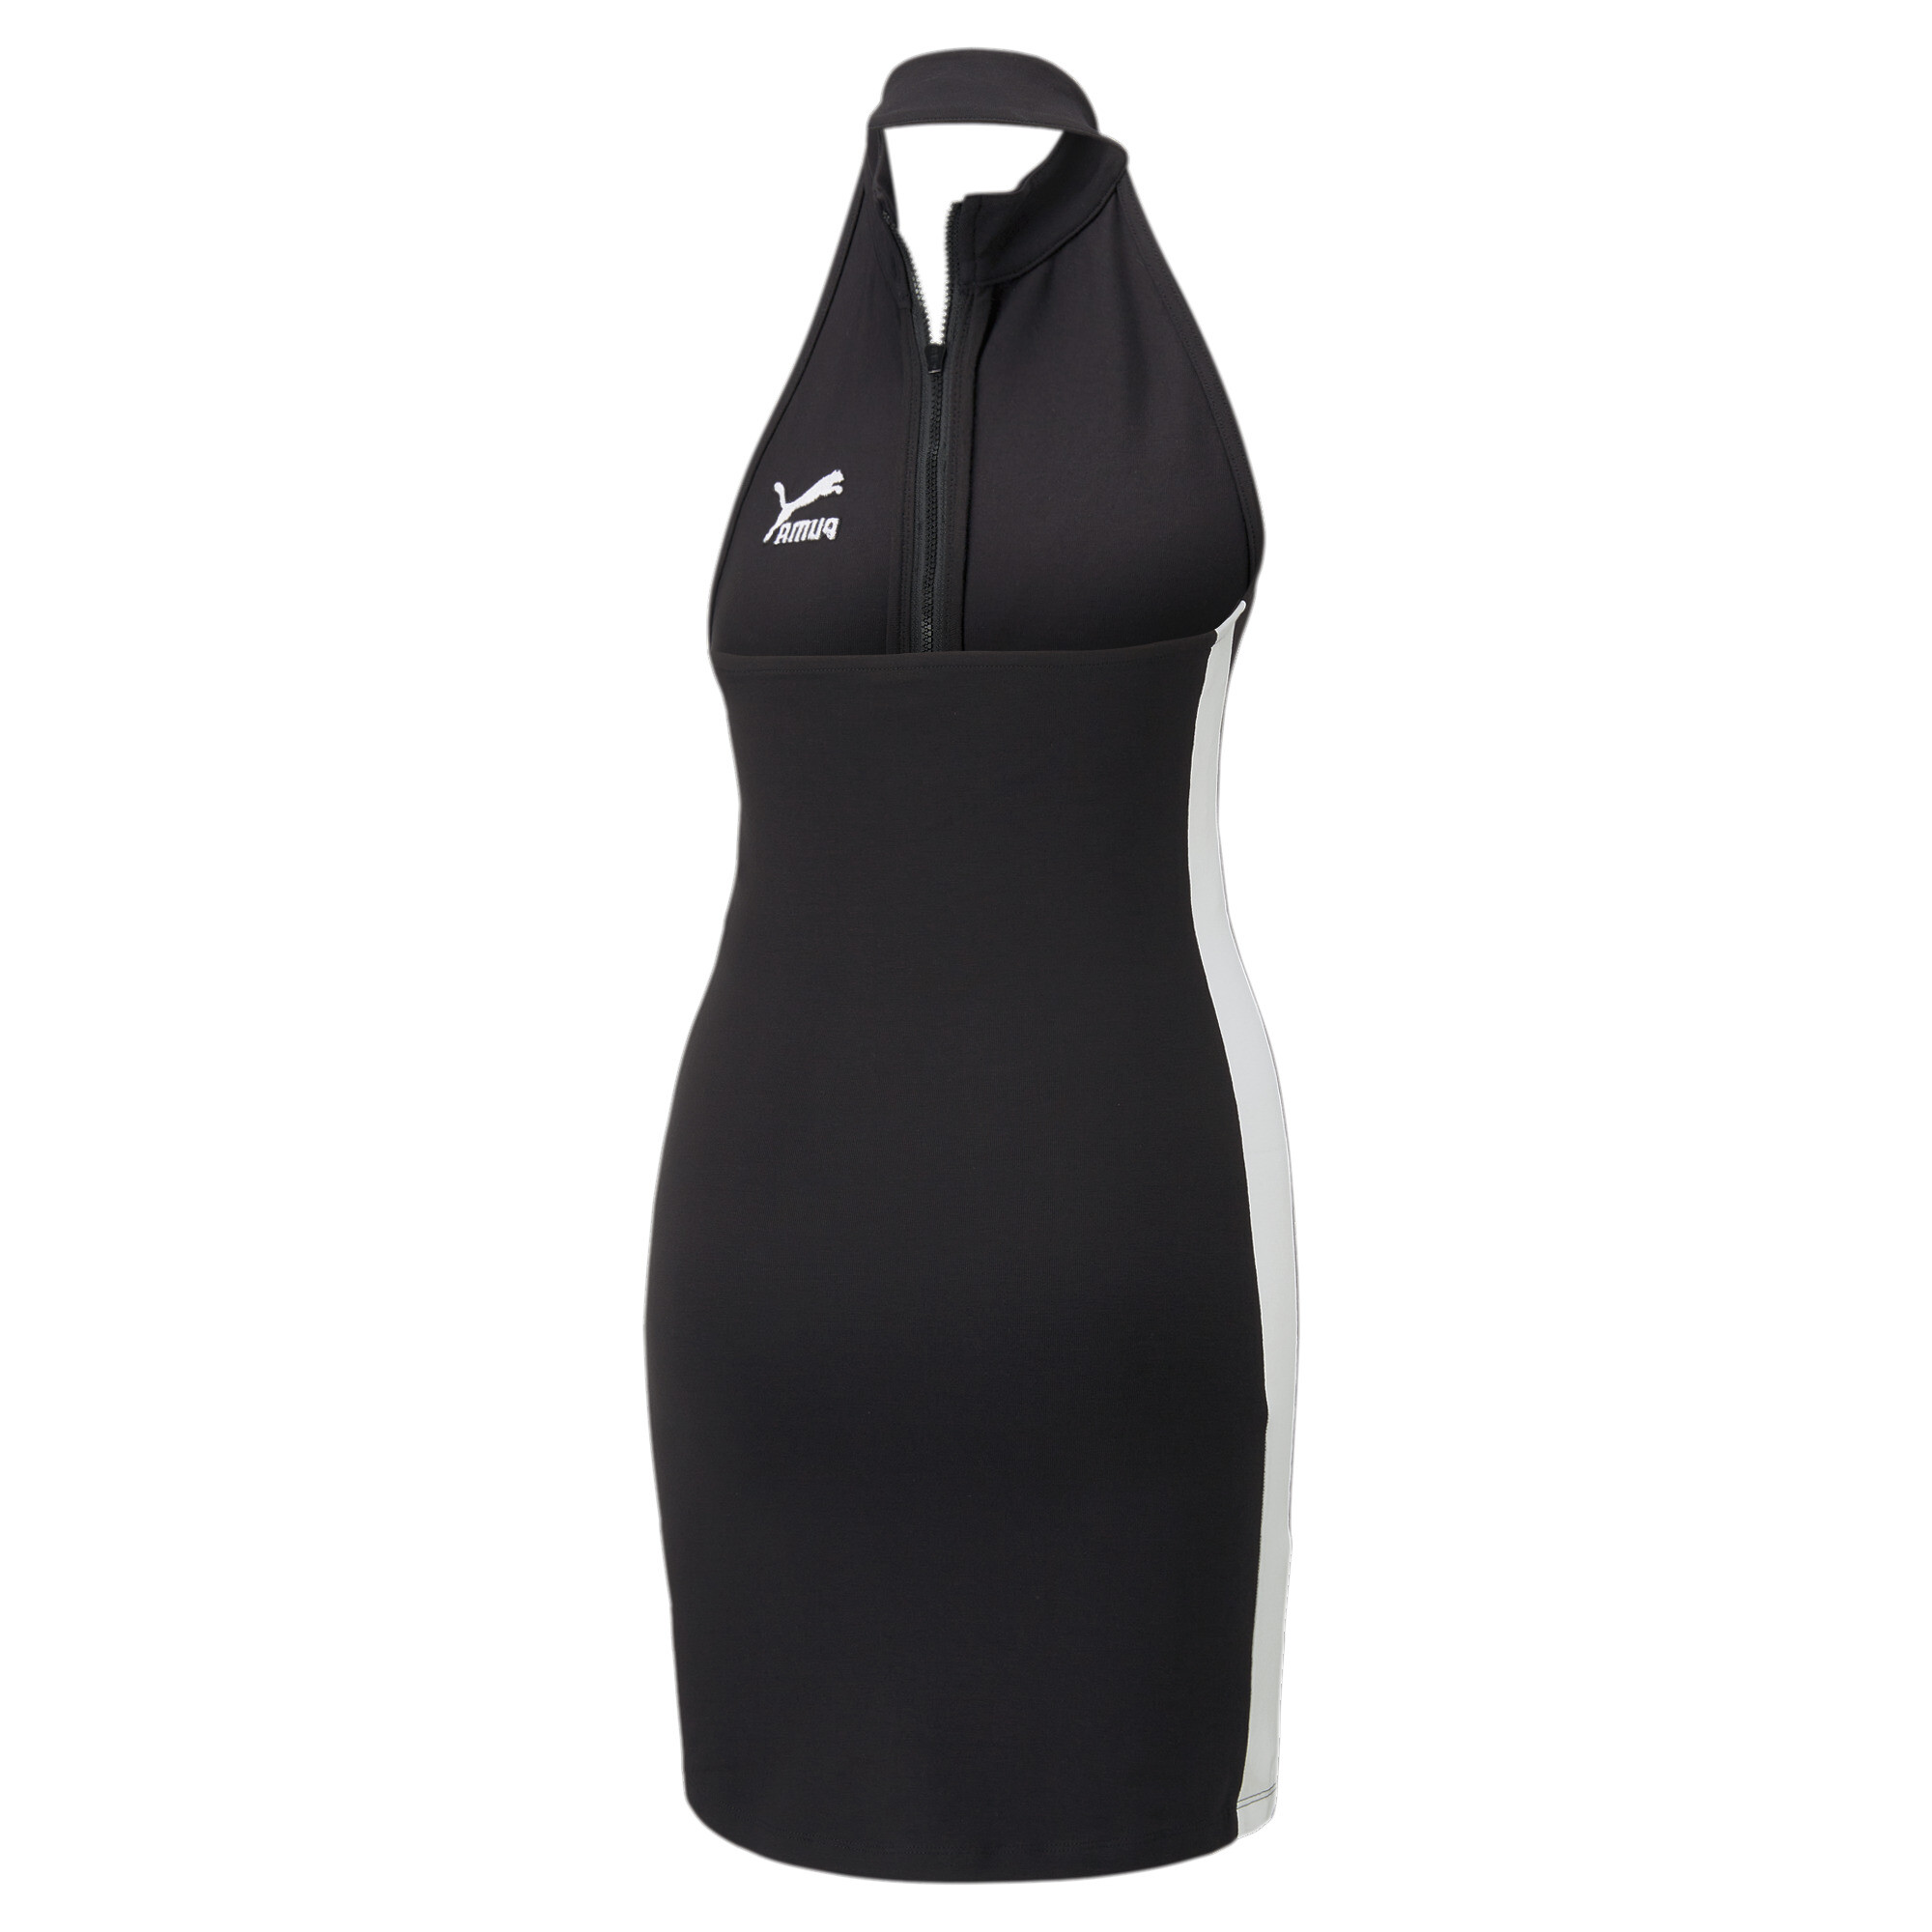 Women's PUMA T7 Half-Zip Mock Neck Dress Women In Black, Size Small